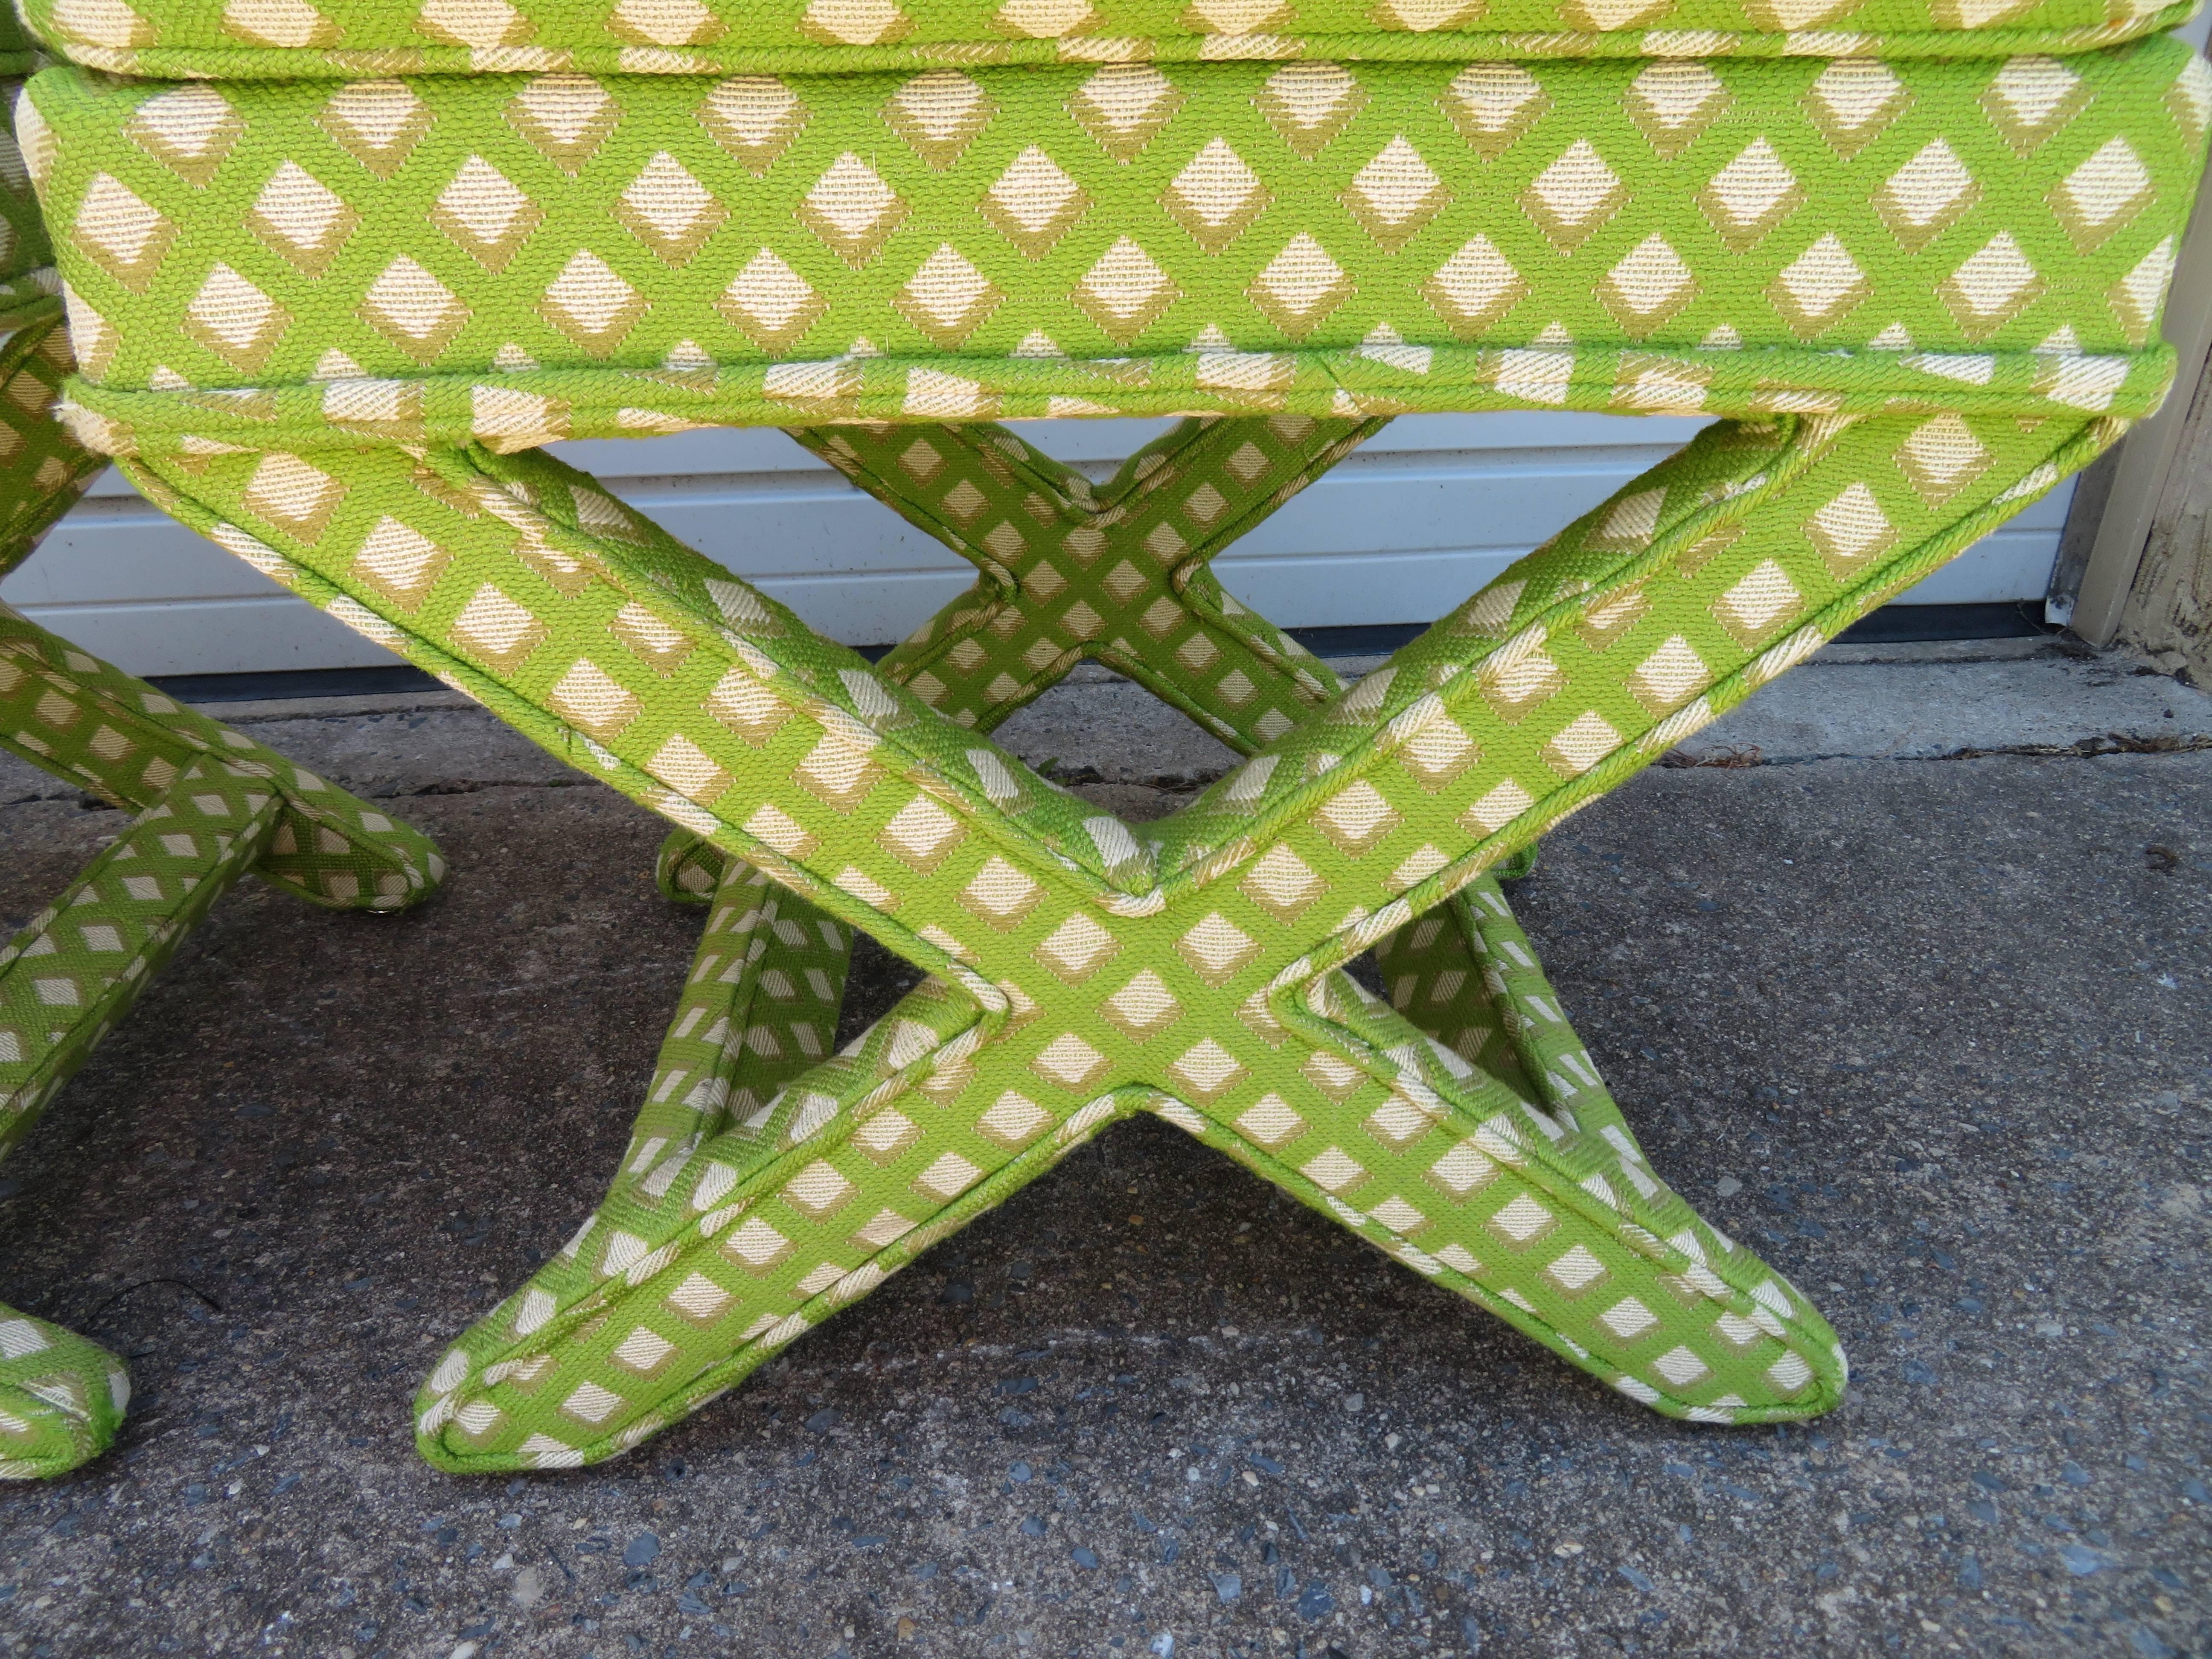 x base stool upholstered